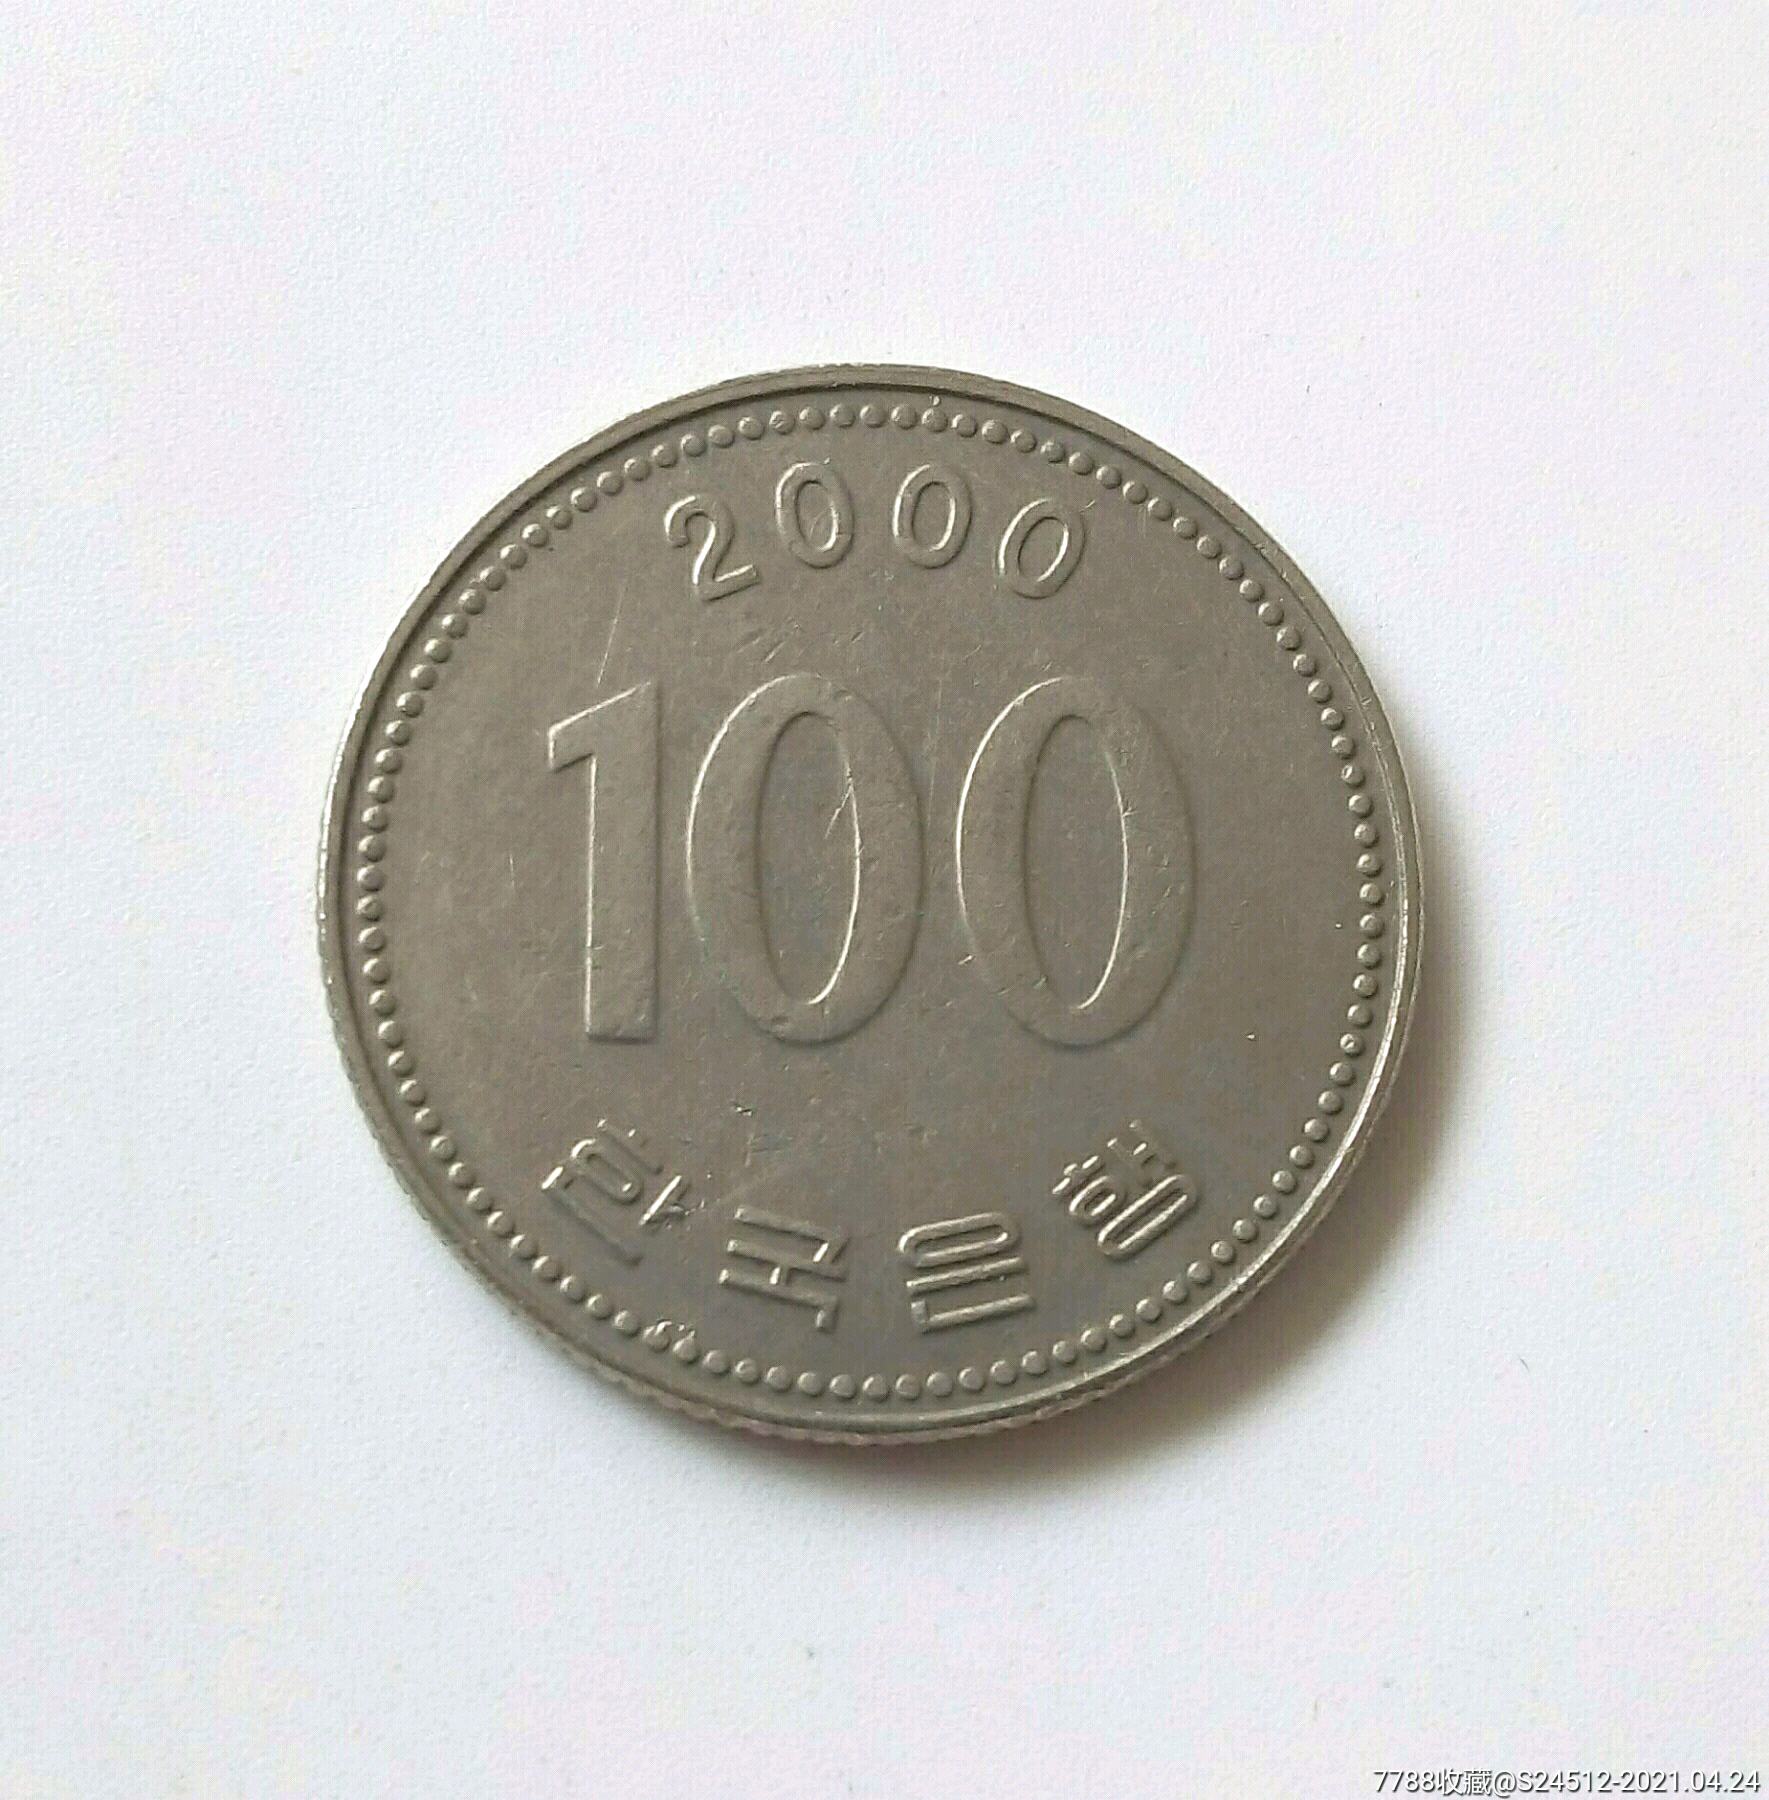 韩国币长什么样子图片图片